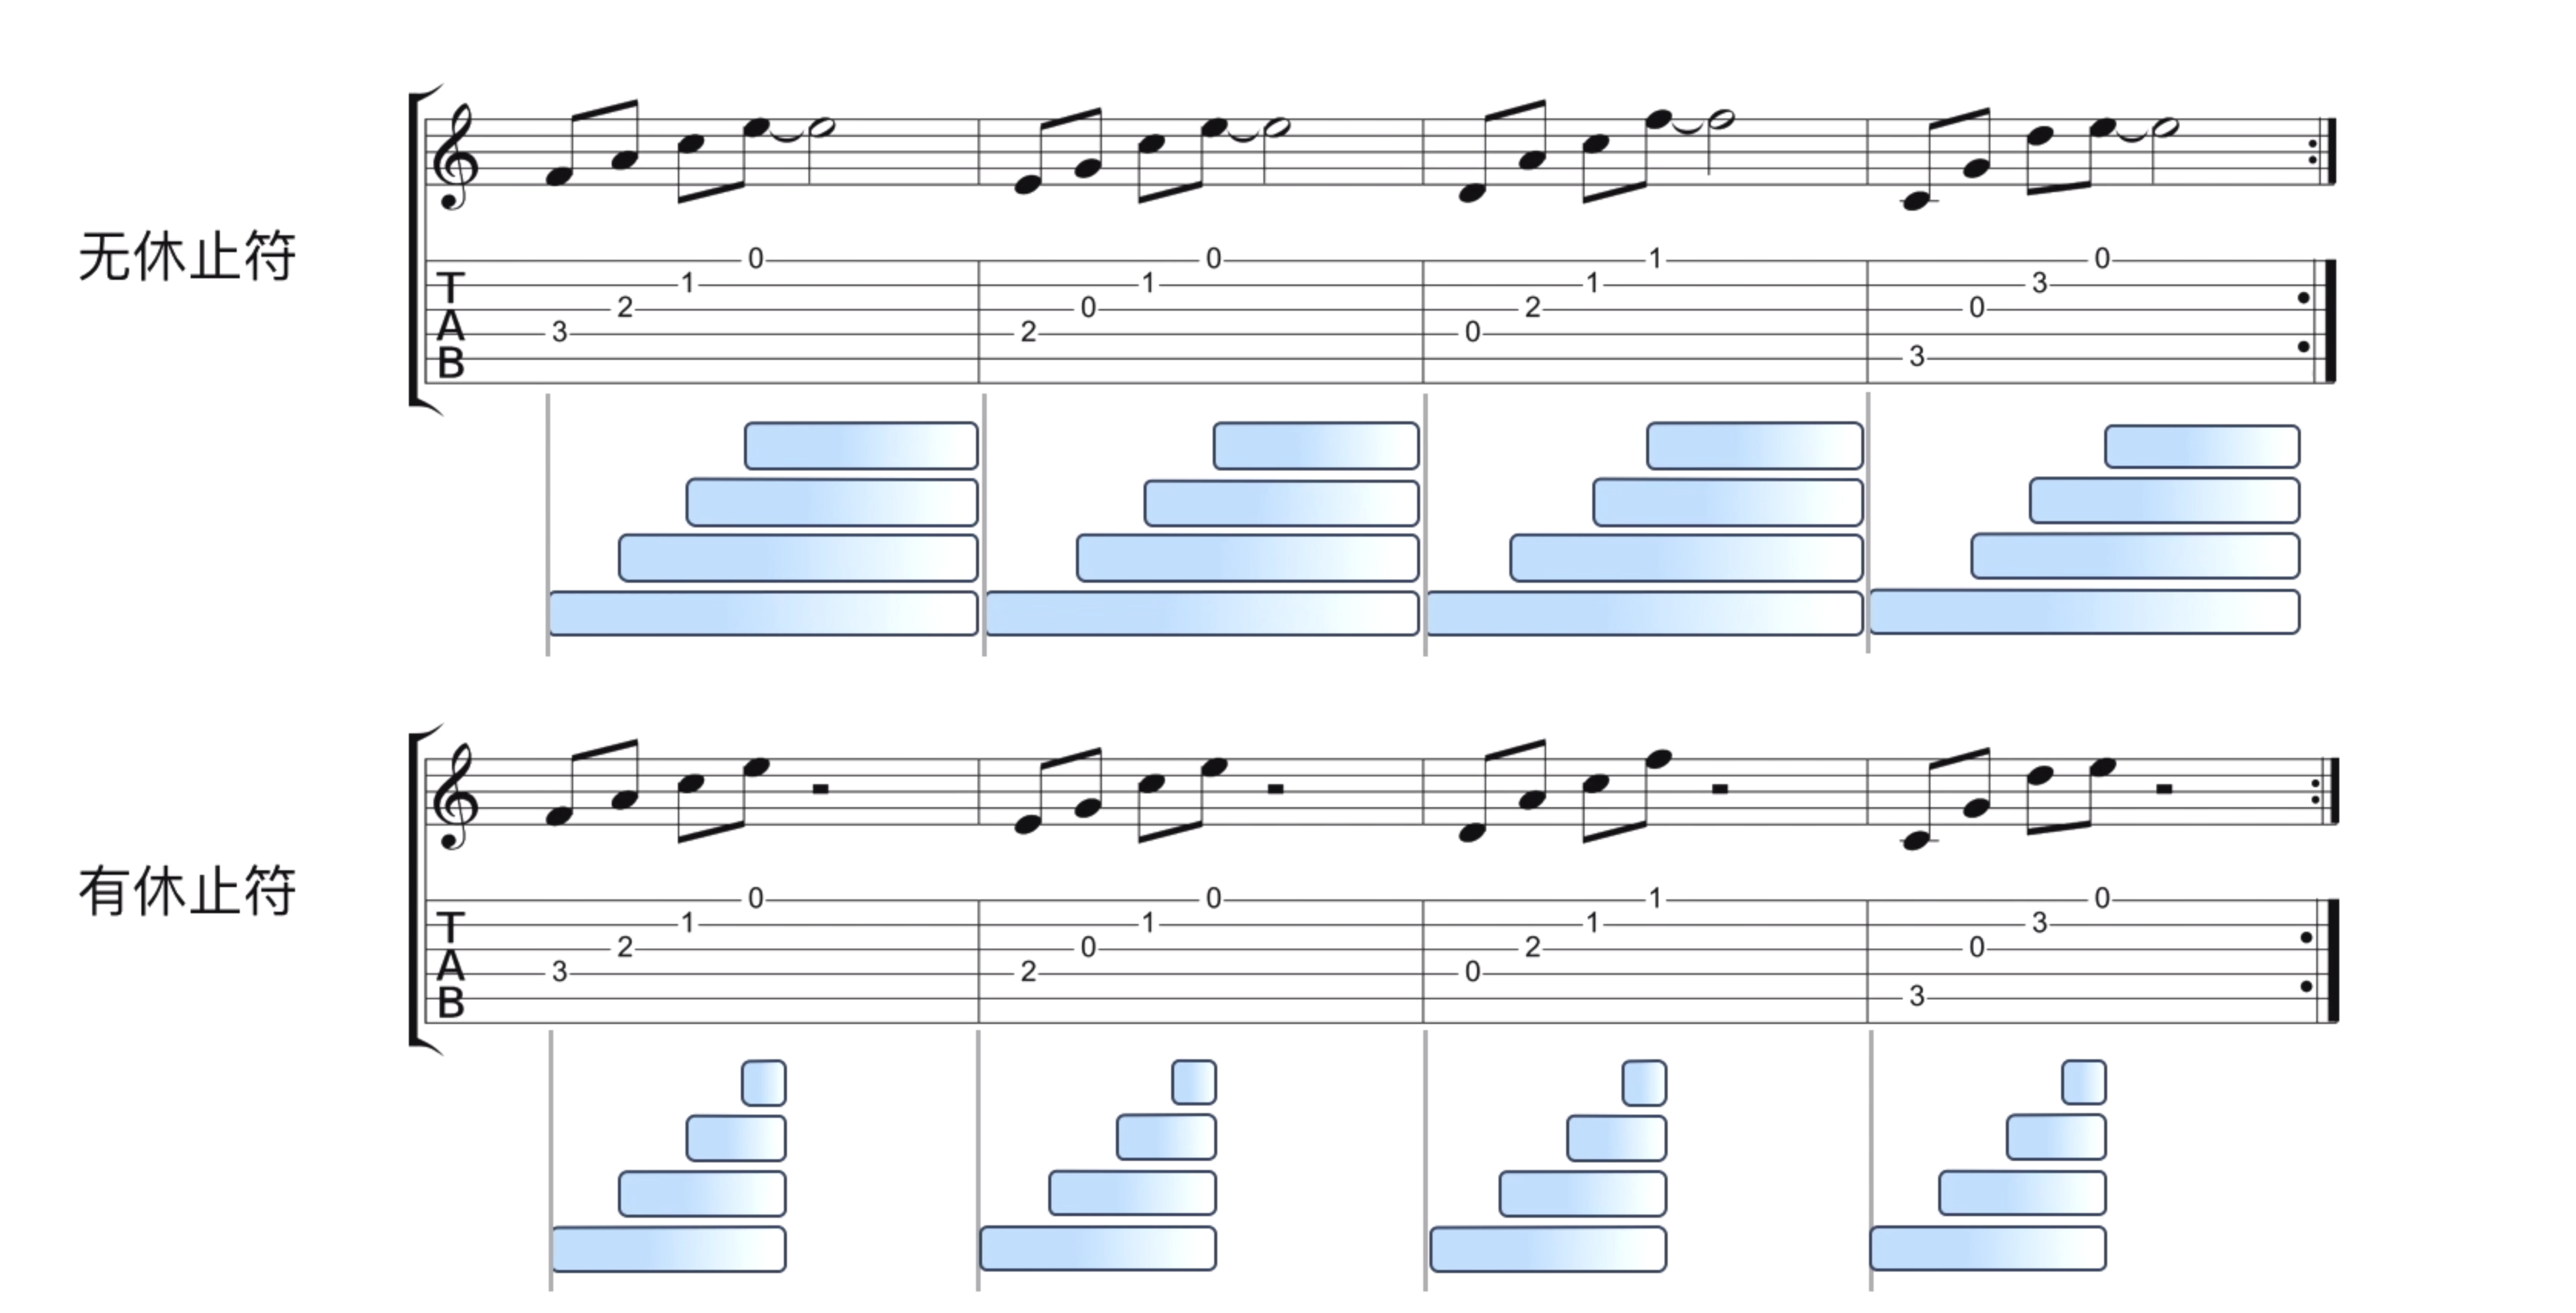 【我爱C大调】吉他乐理学堂 第五课 一招学会165个和弦的按法_哔哩哔哩_bilibili